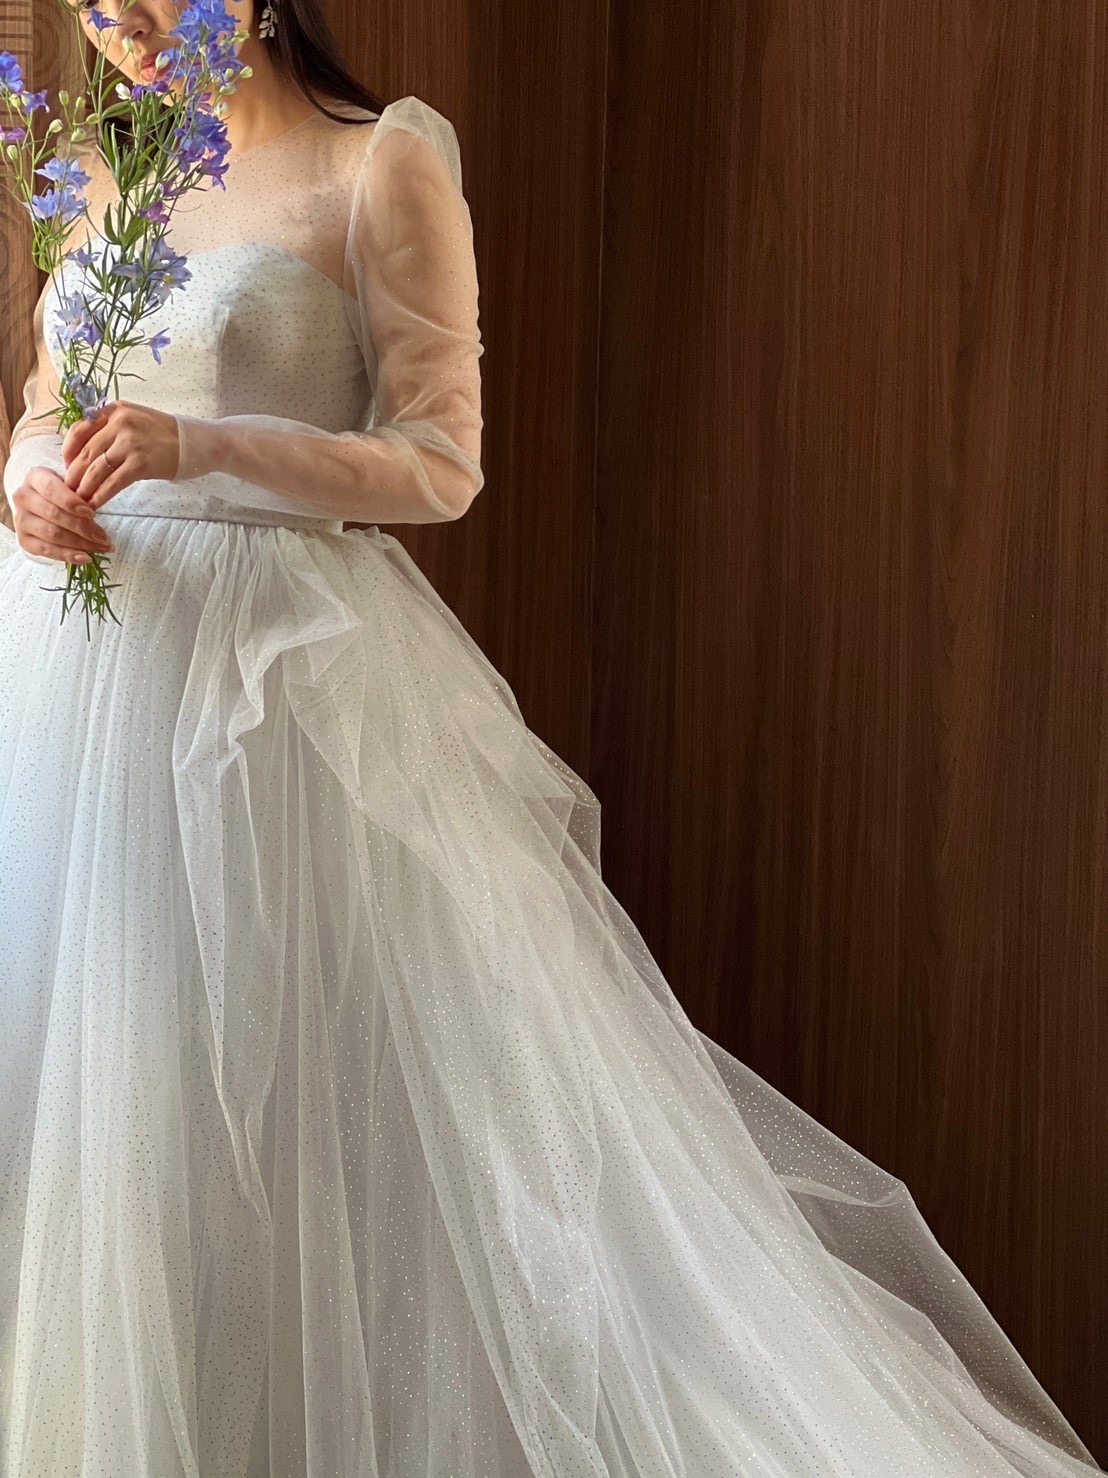 トリートドレッシング大阪店の提携結婚式会場のザガーデンオリエンタルにおすすめのグレーのカラードレス